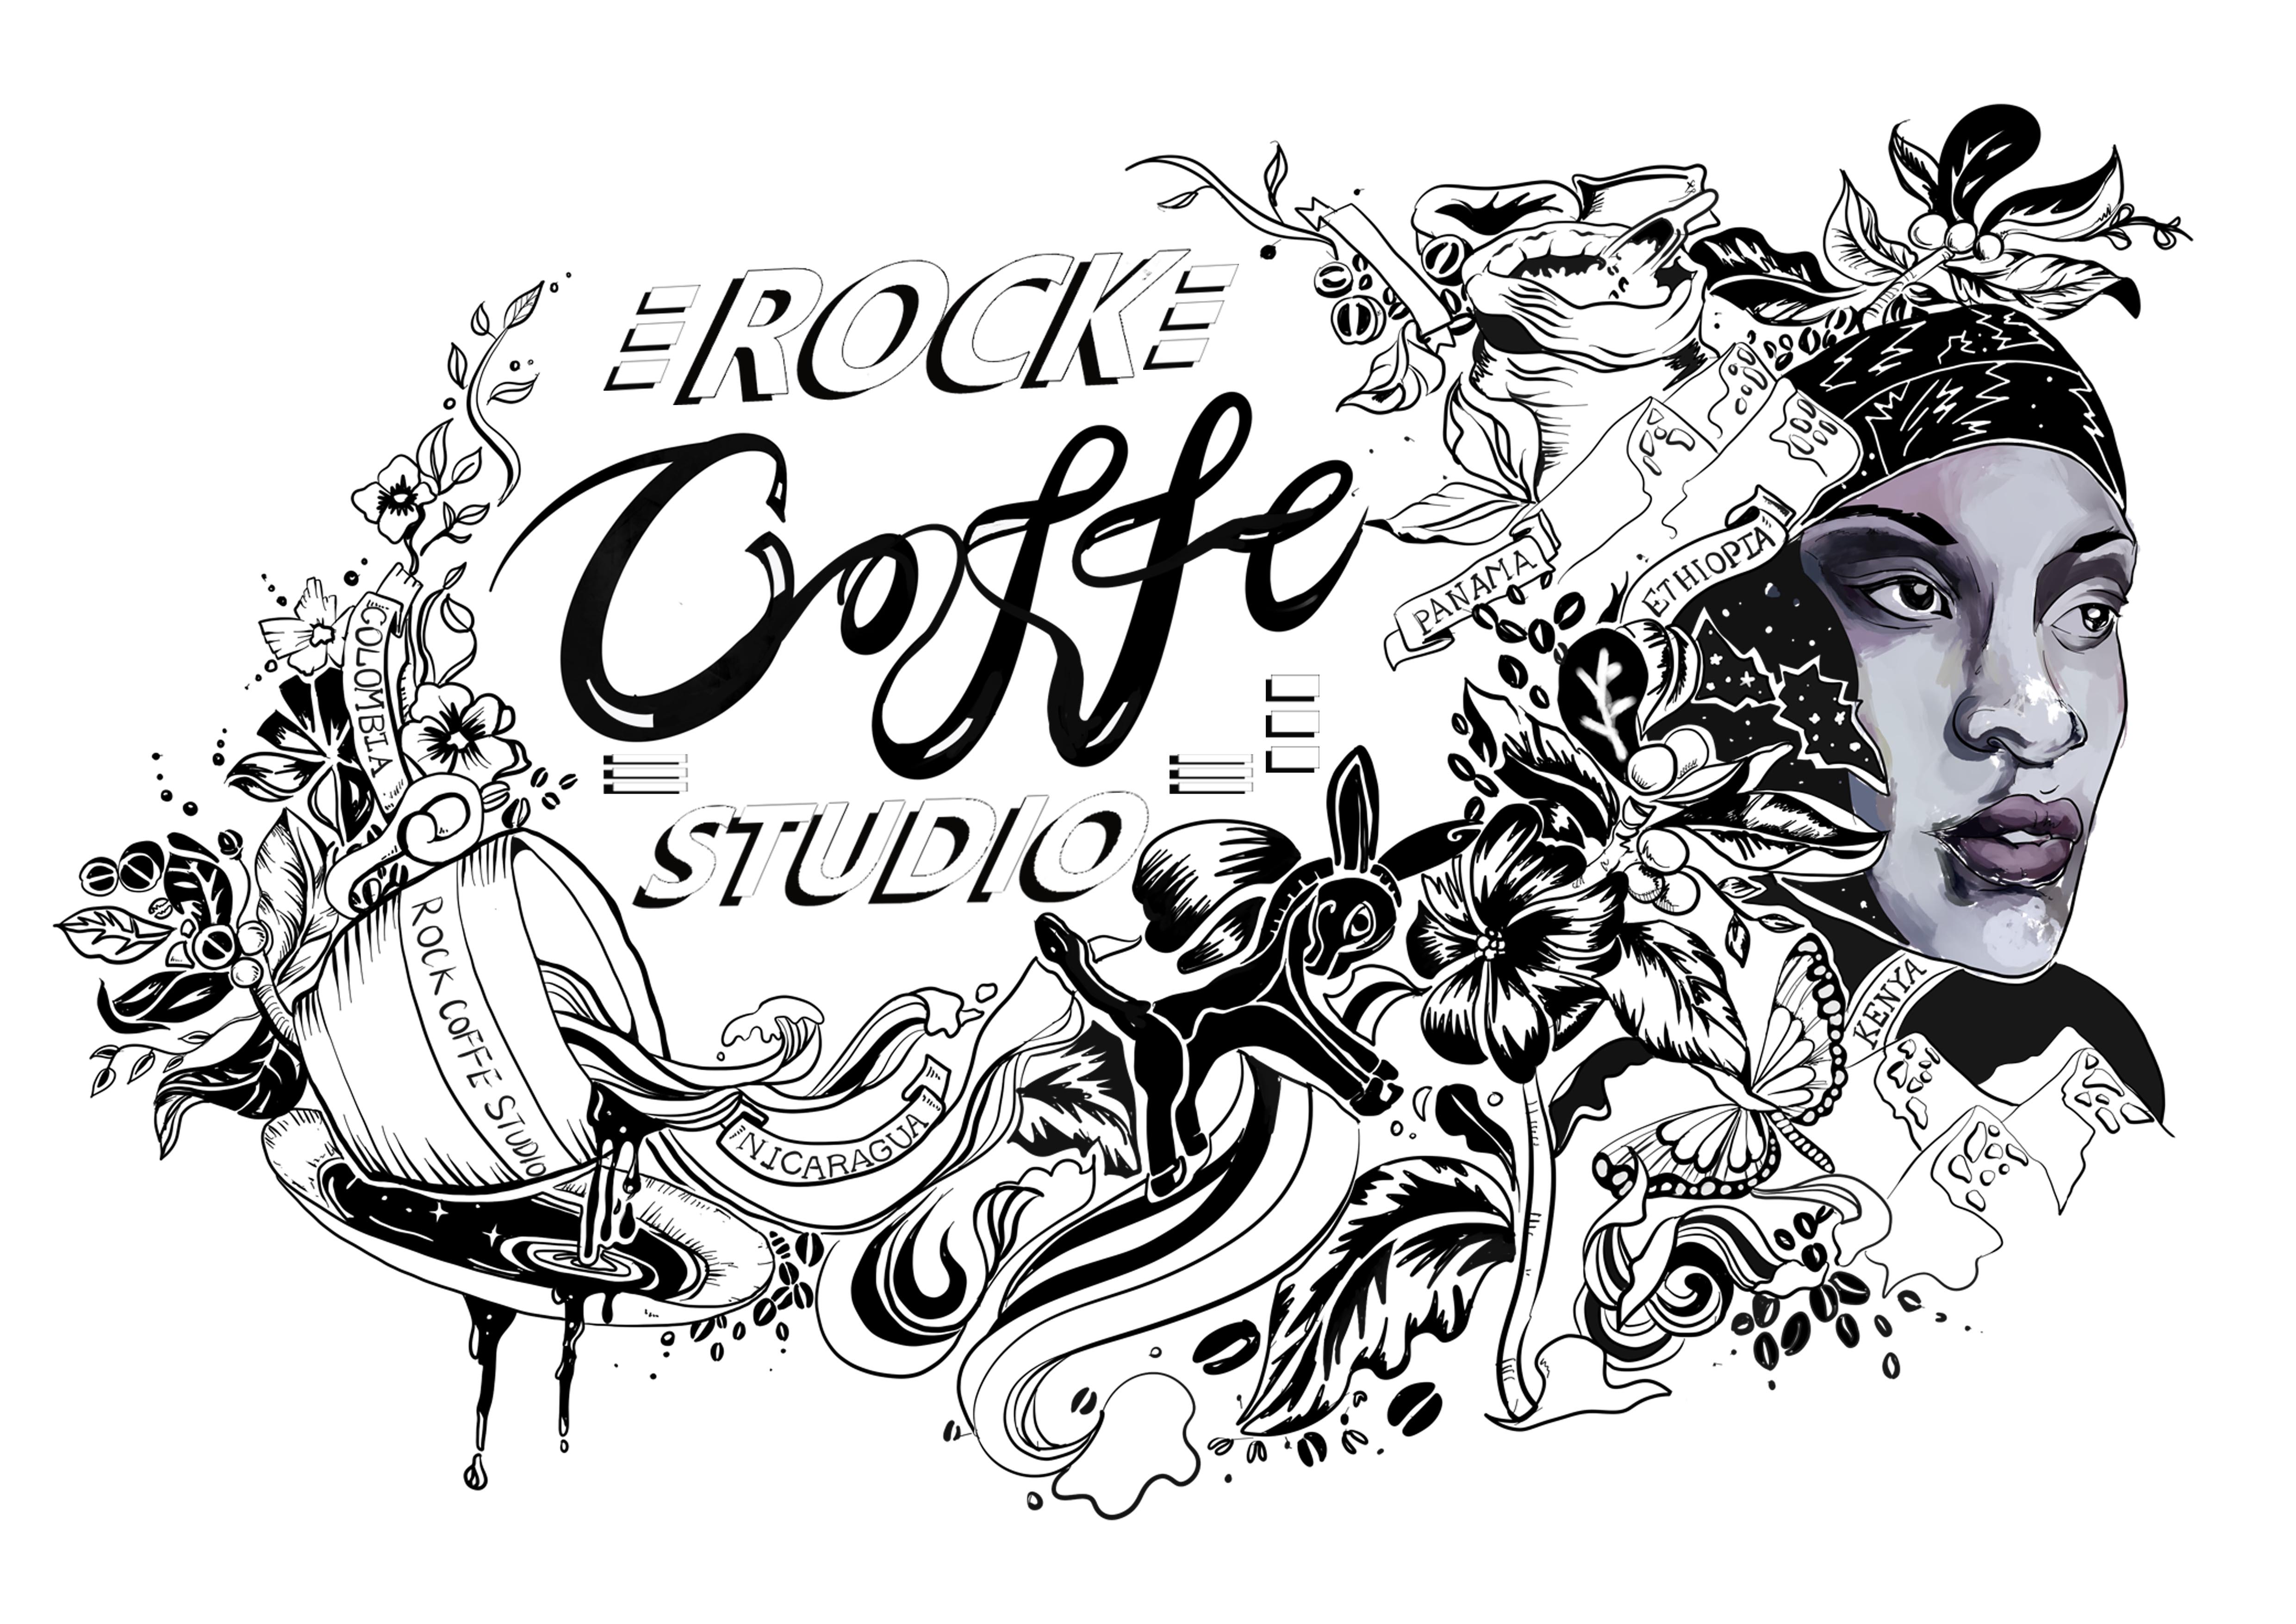 首先是进行了板绘,将要画的图案和字体设计好,题材是咖啡的历史和制作图片